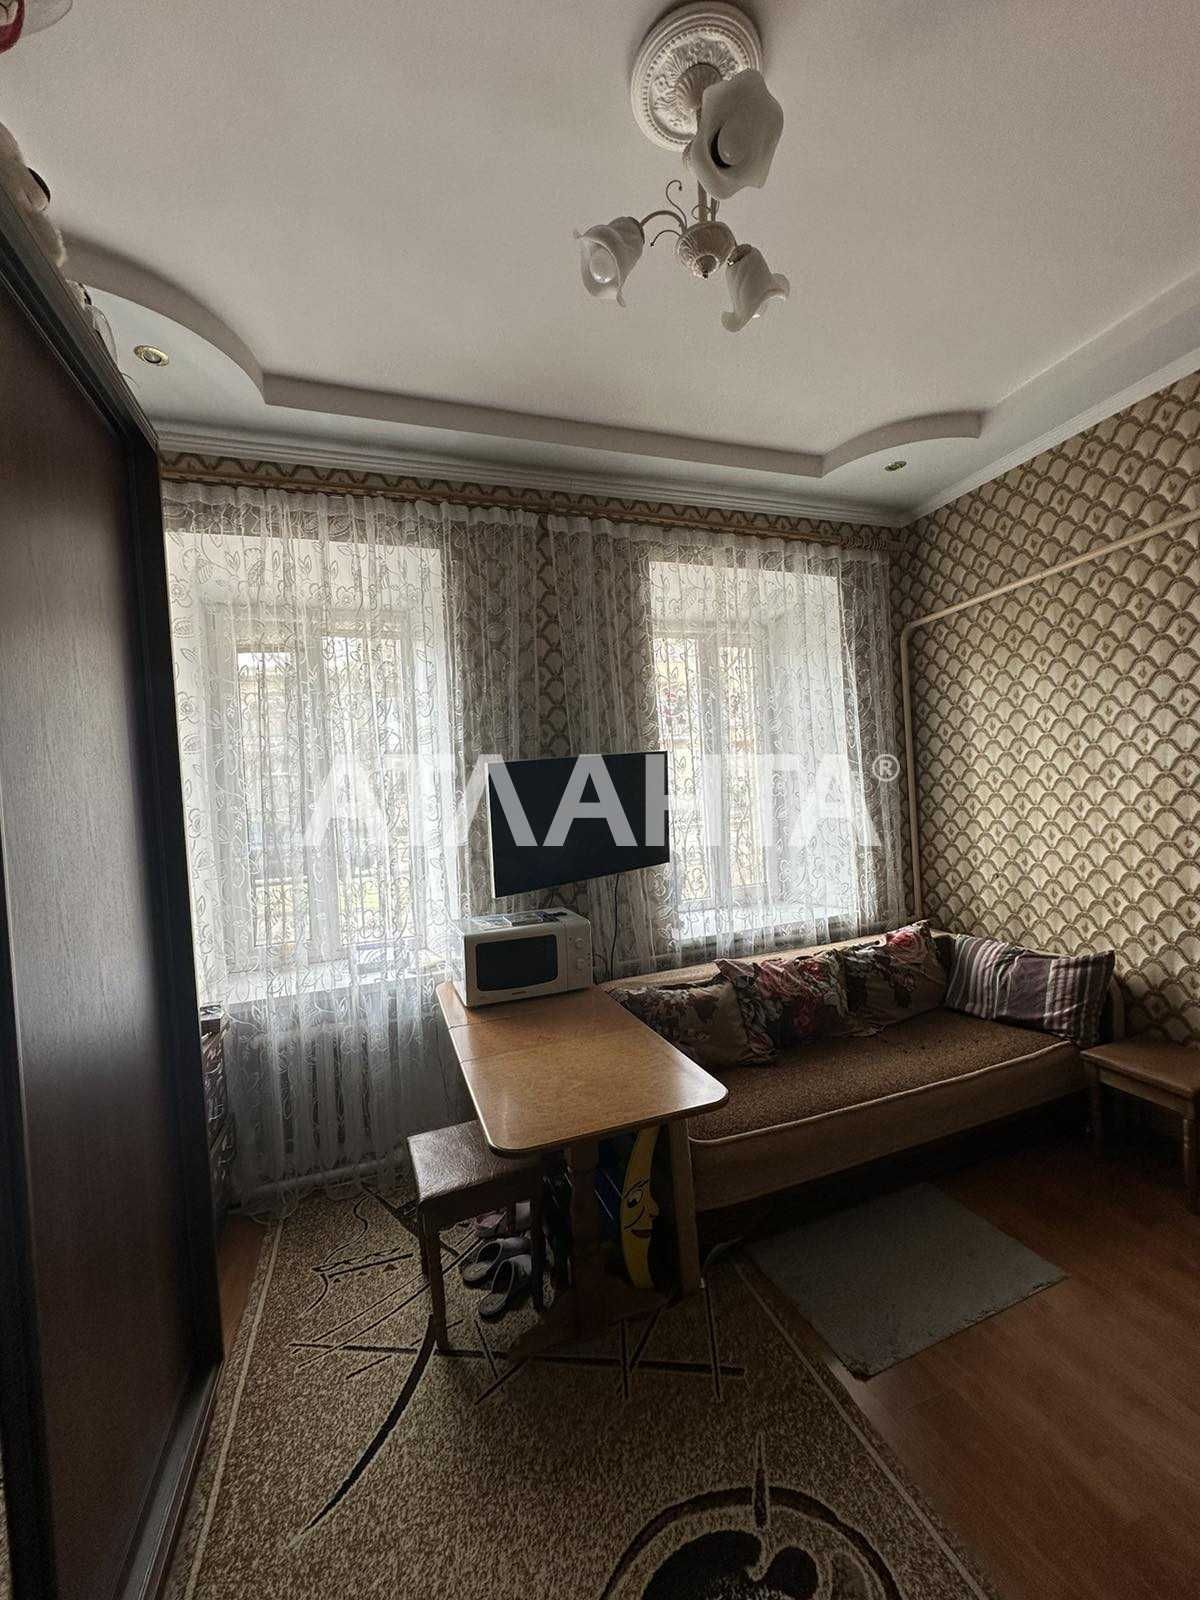 Продаётся комната в коммунальной квартире по улице Лазарева.